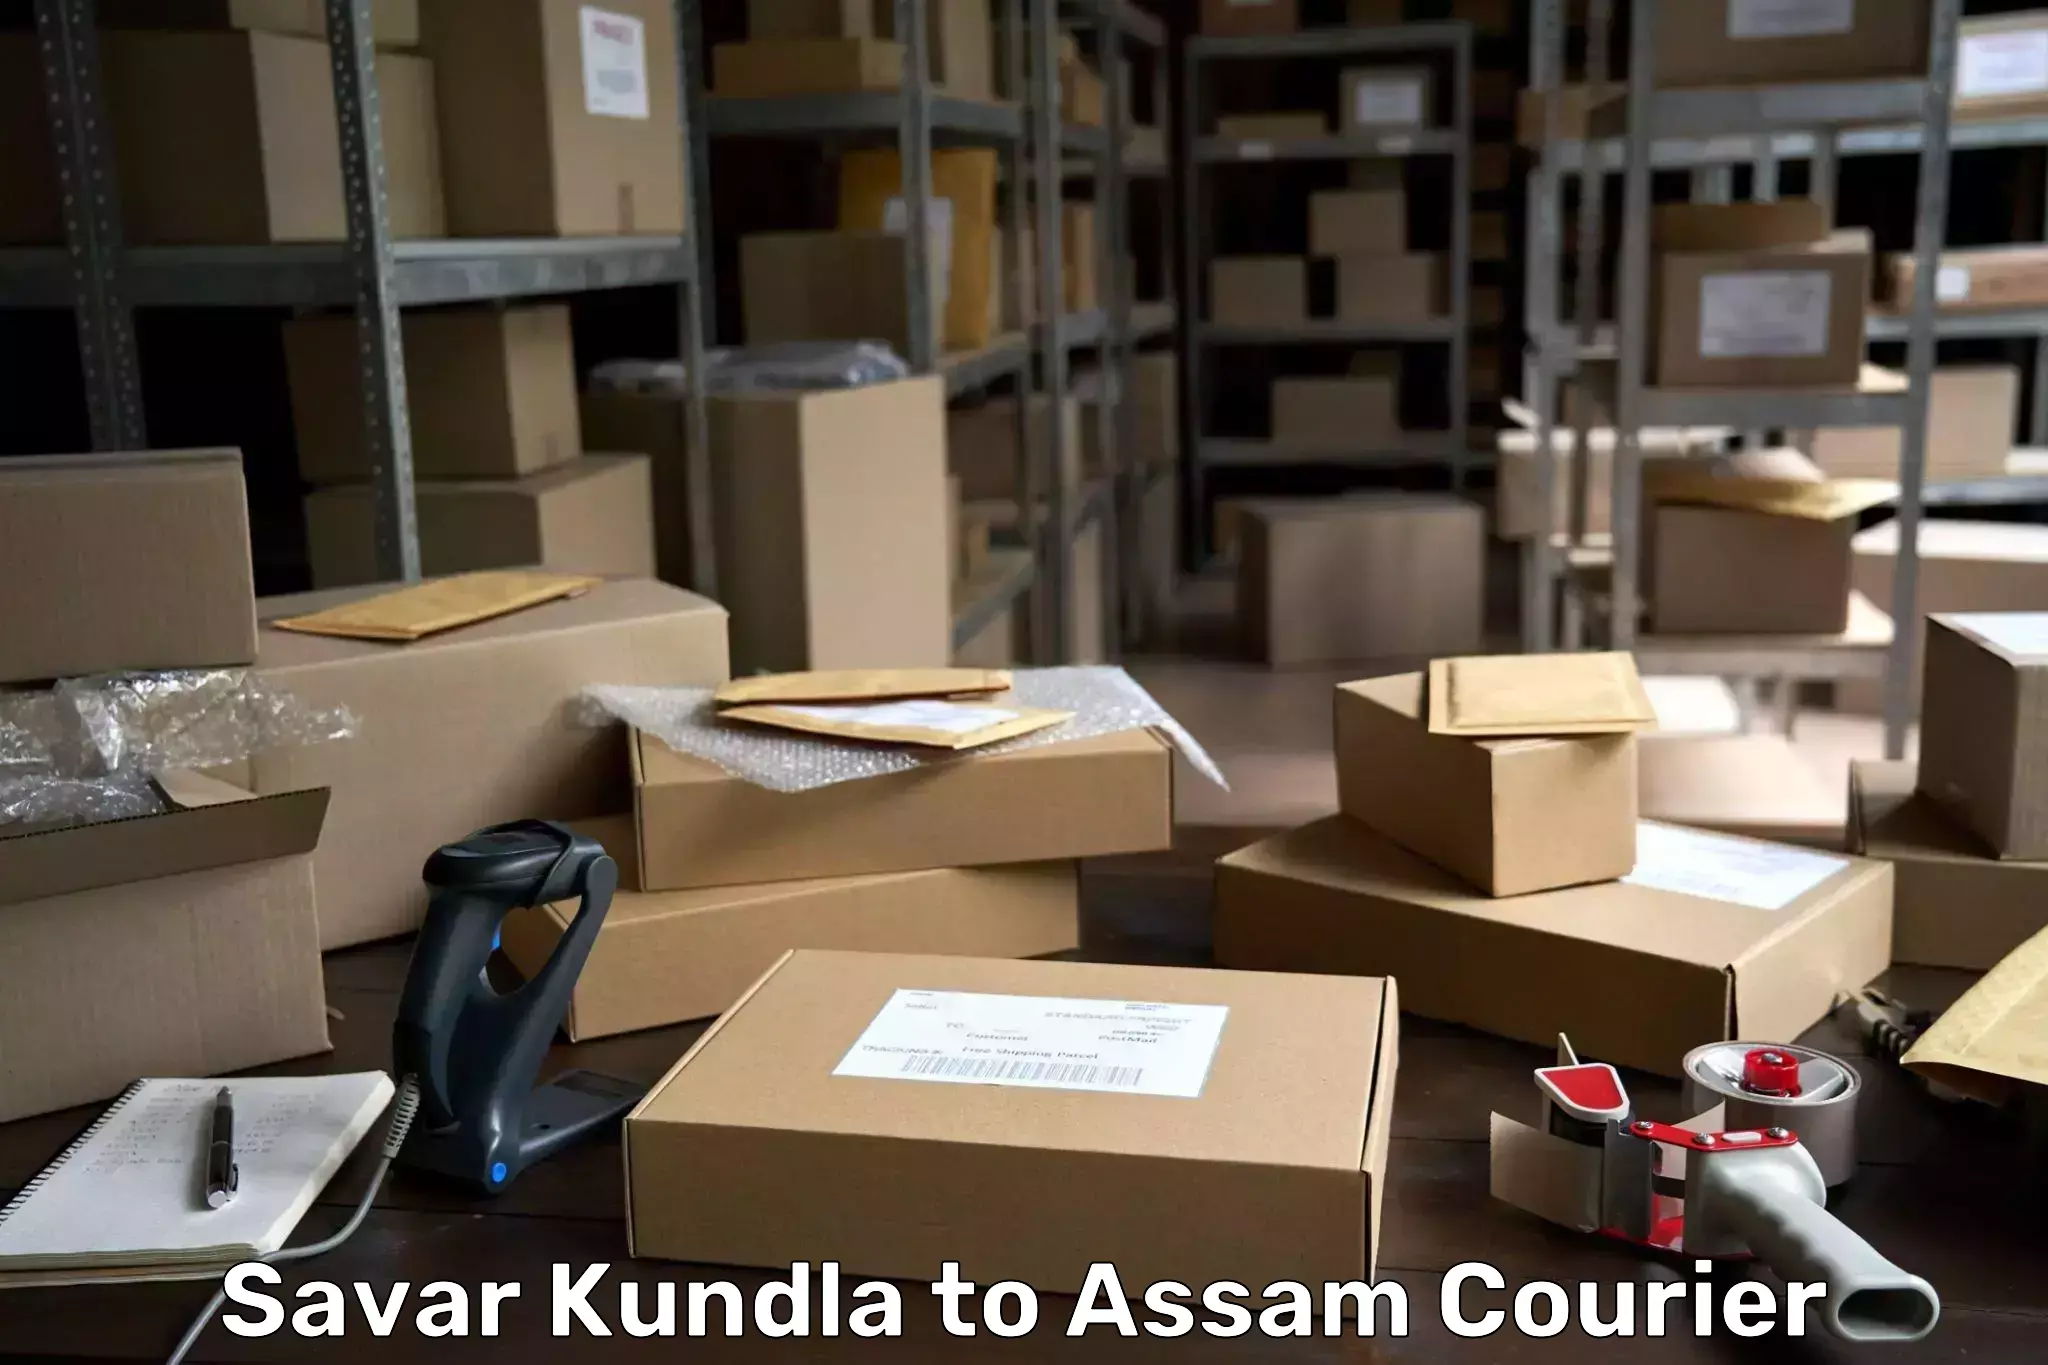 Courier service comparison Savar Kundla to Nalbari